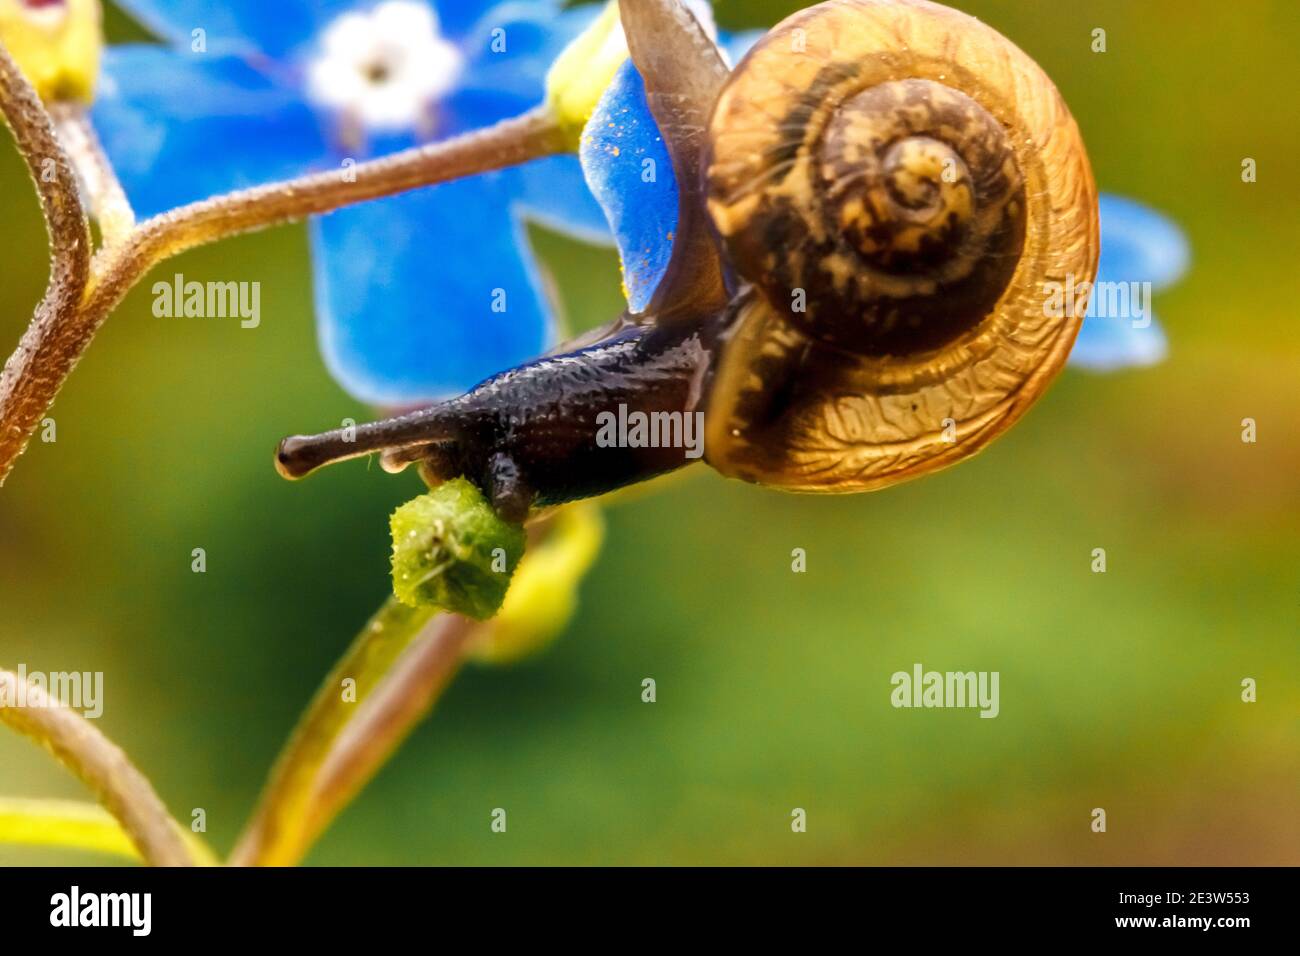 Schnecke Nahaufnahme Porträt. Kleine Schnecke in Schale kriechen auf Blume und grünes Blatt im Garten. Inspirierende natürliche Blumen Frühling oder Sommer Hintergrund. L Stockfoto